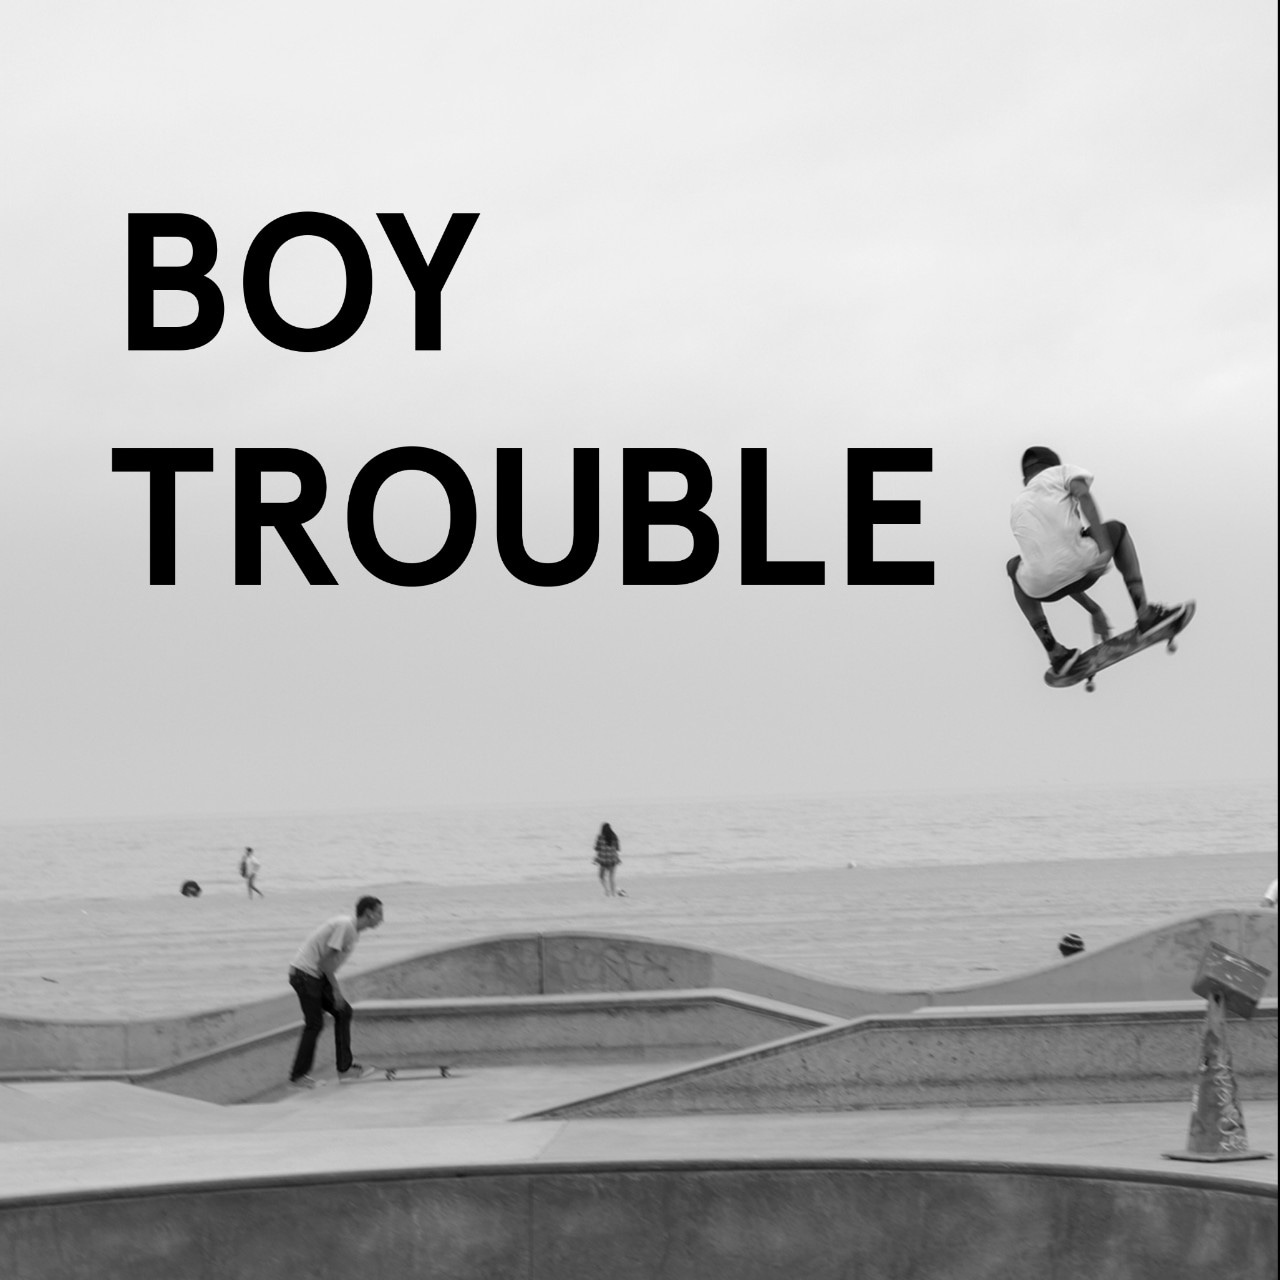 Boy trouble tile